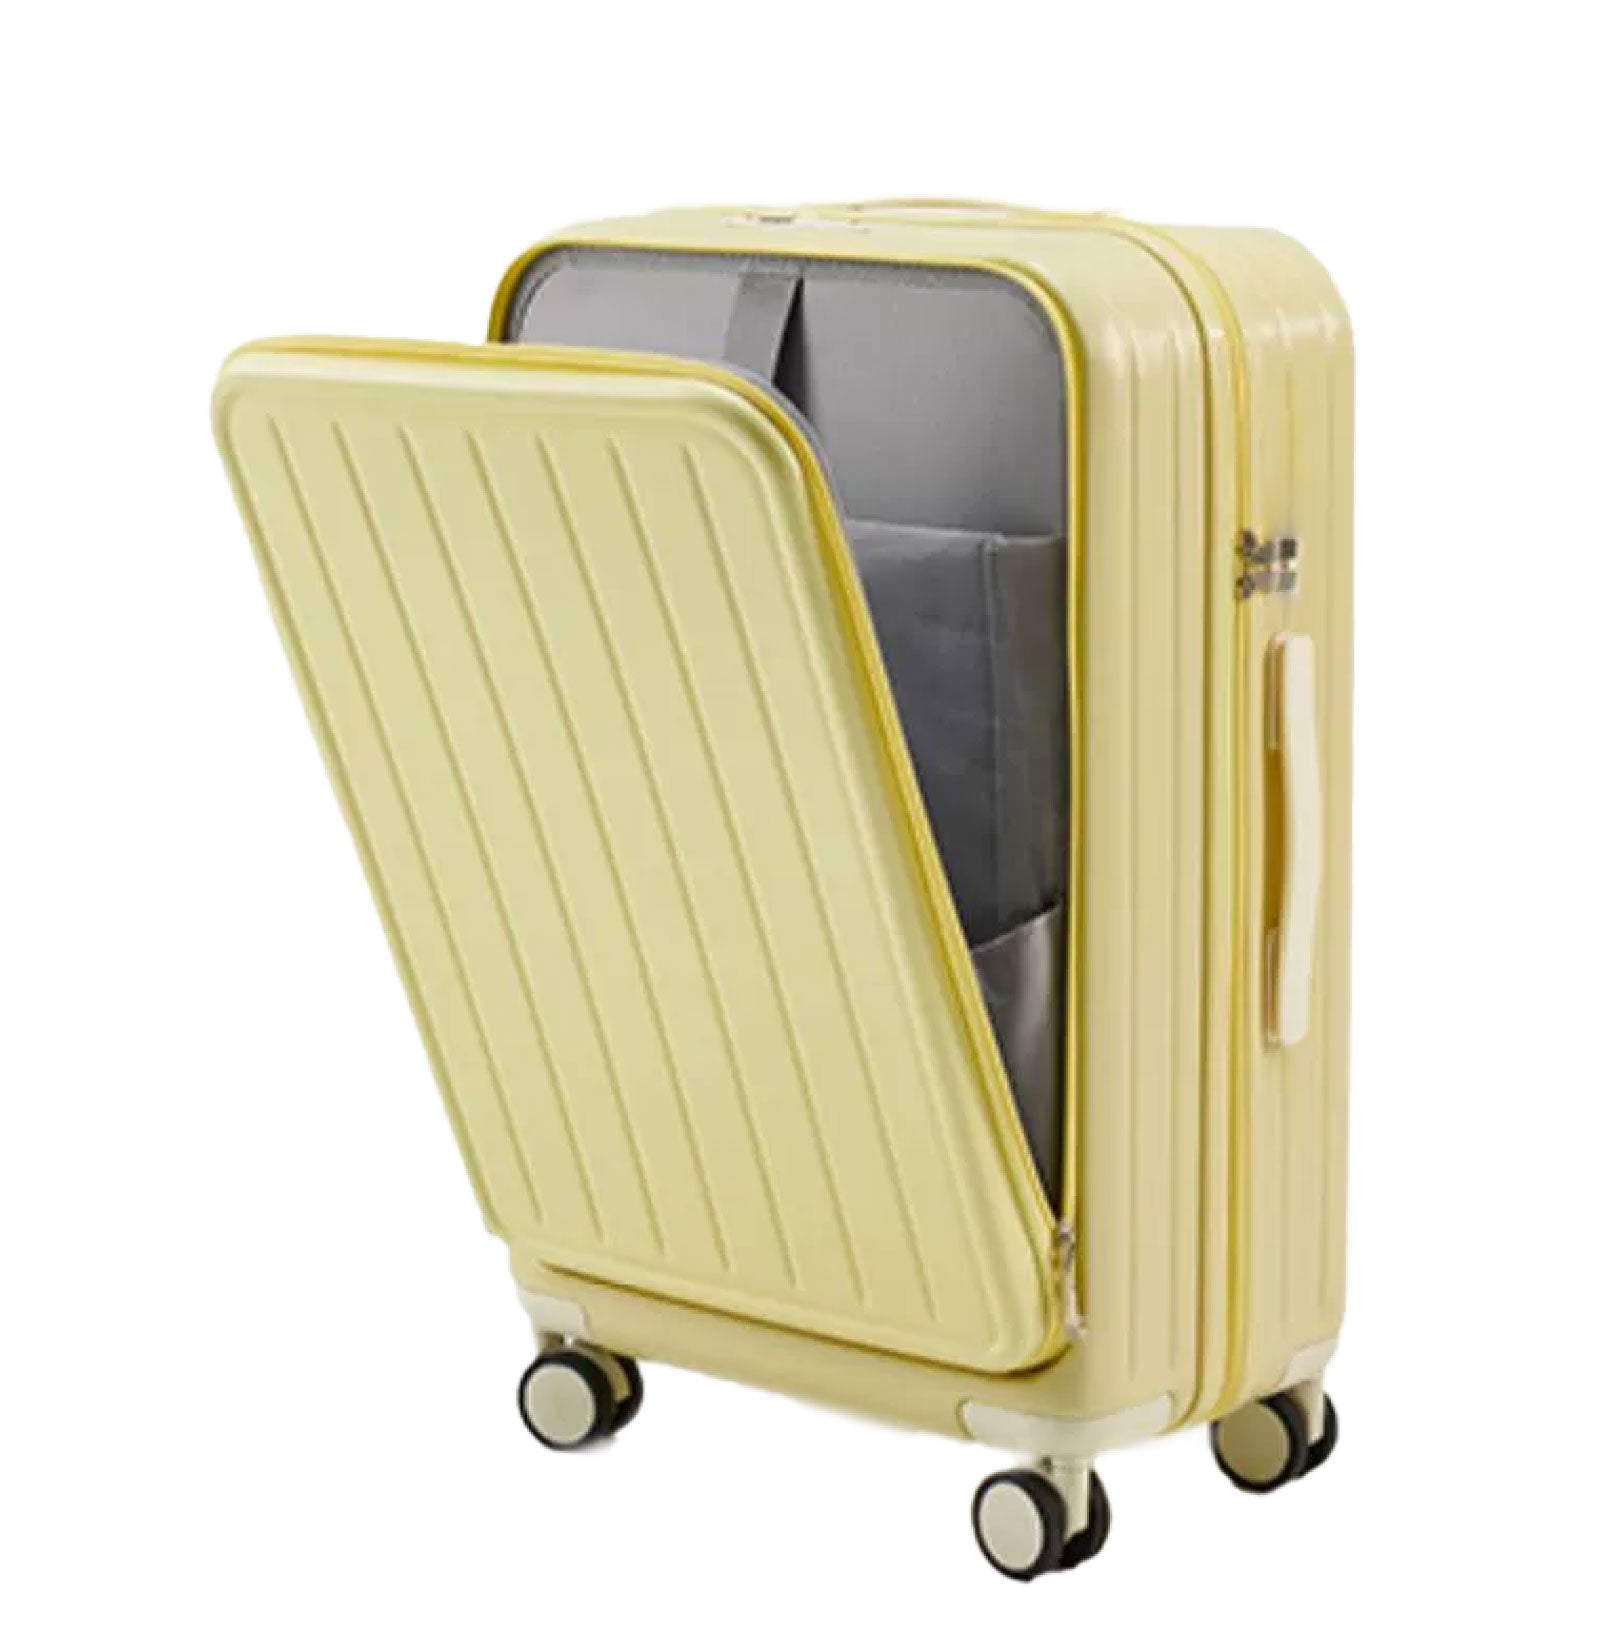 前開き スーツケース USBポート付き キャリーケース Mサイズ 大型 66L キャリーバッグ 5カラー選ぶ フロントオープン 4-7日用 泊まる カップホルダー付き 軽量設計 大容量 トランク 修学旅行 海外旅行 国内旅行 sc172-24